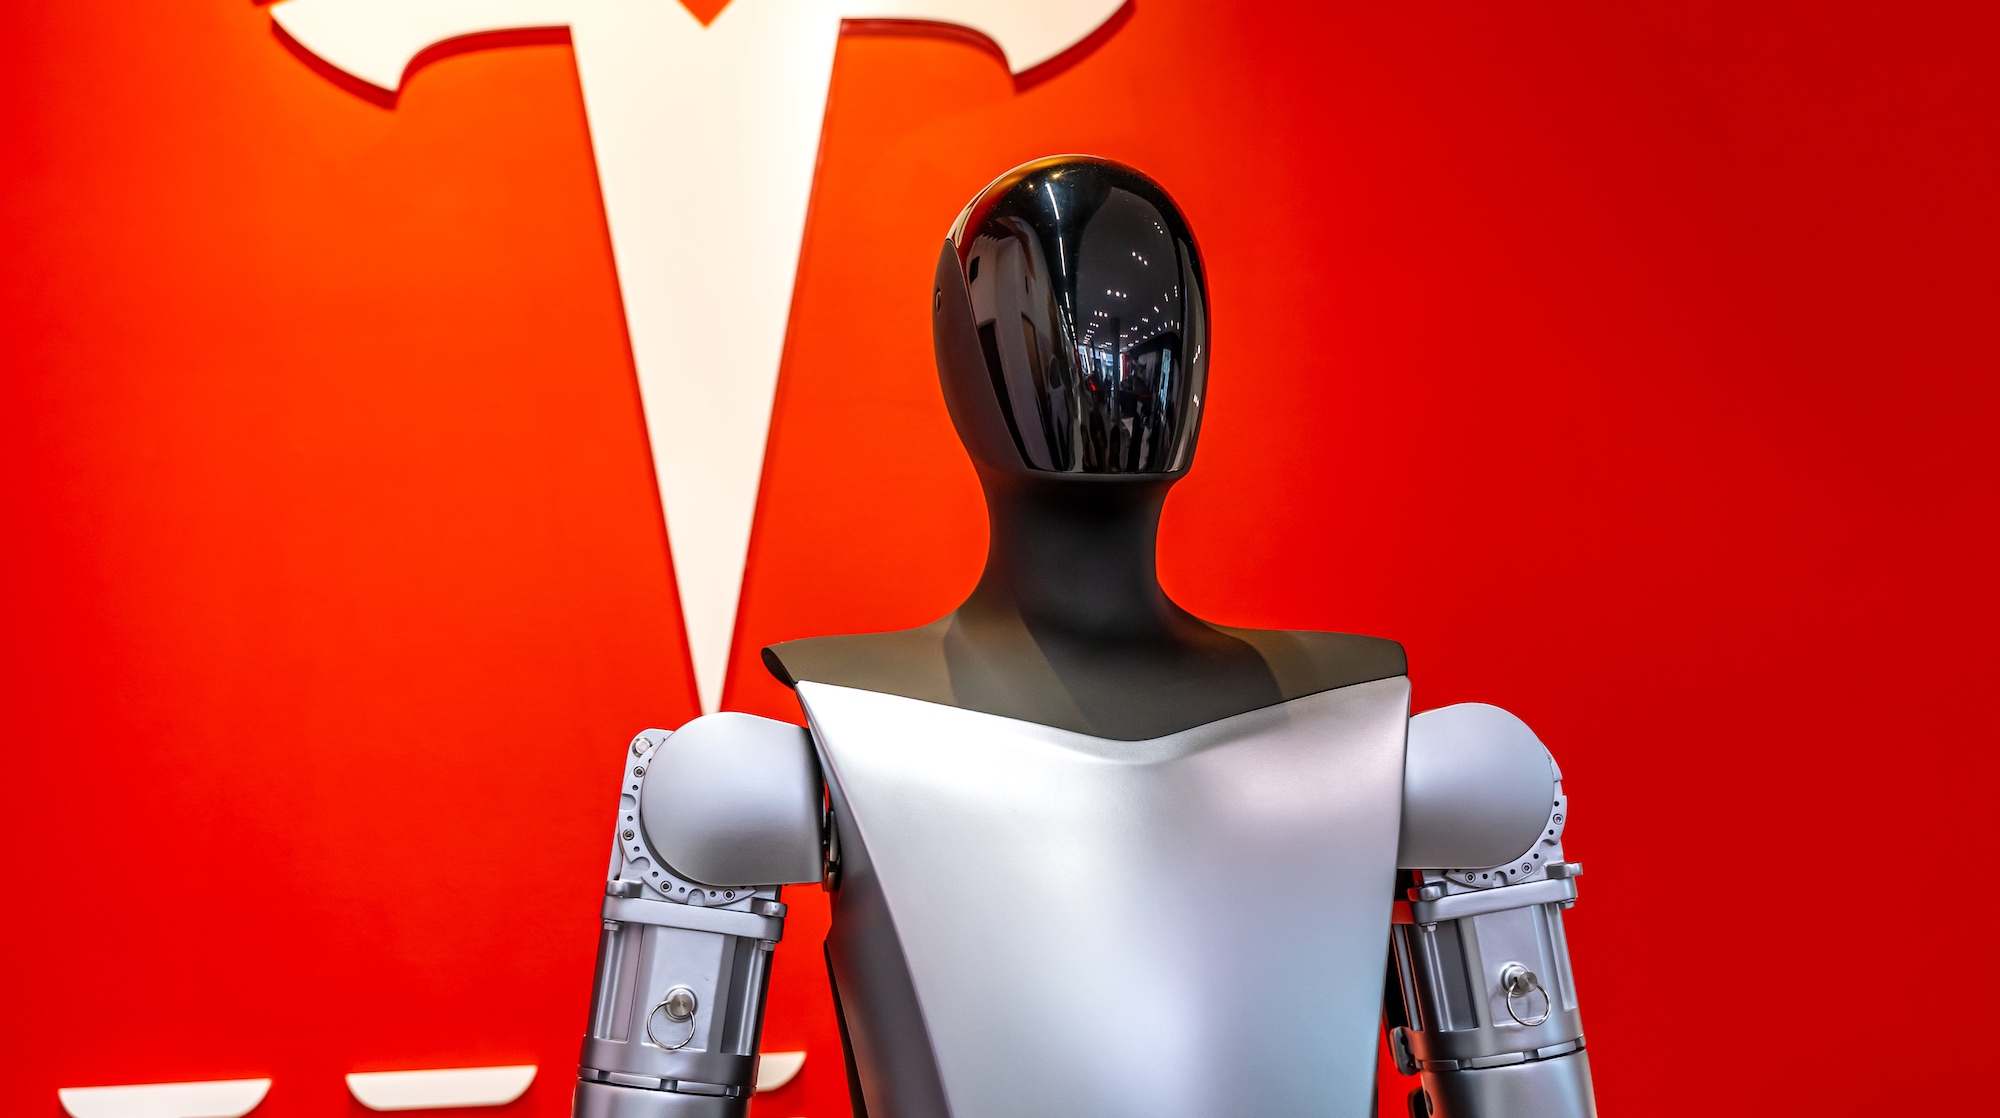 Le robot adopte une apparence humanoïde pour mieux s’intégrer à son environnement et remplacer les humains dans leurs tâches quotidiennes à la maison. © Olga, Adobe Stock